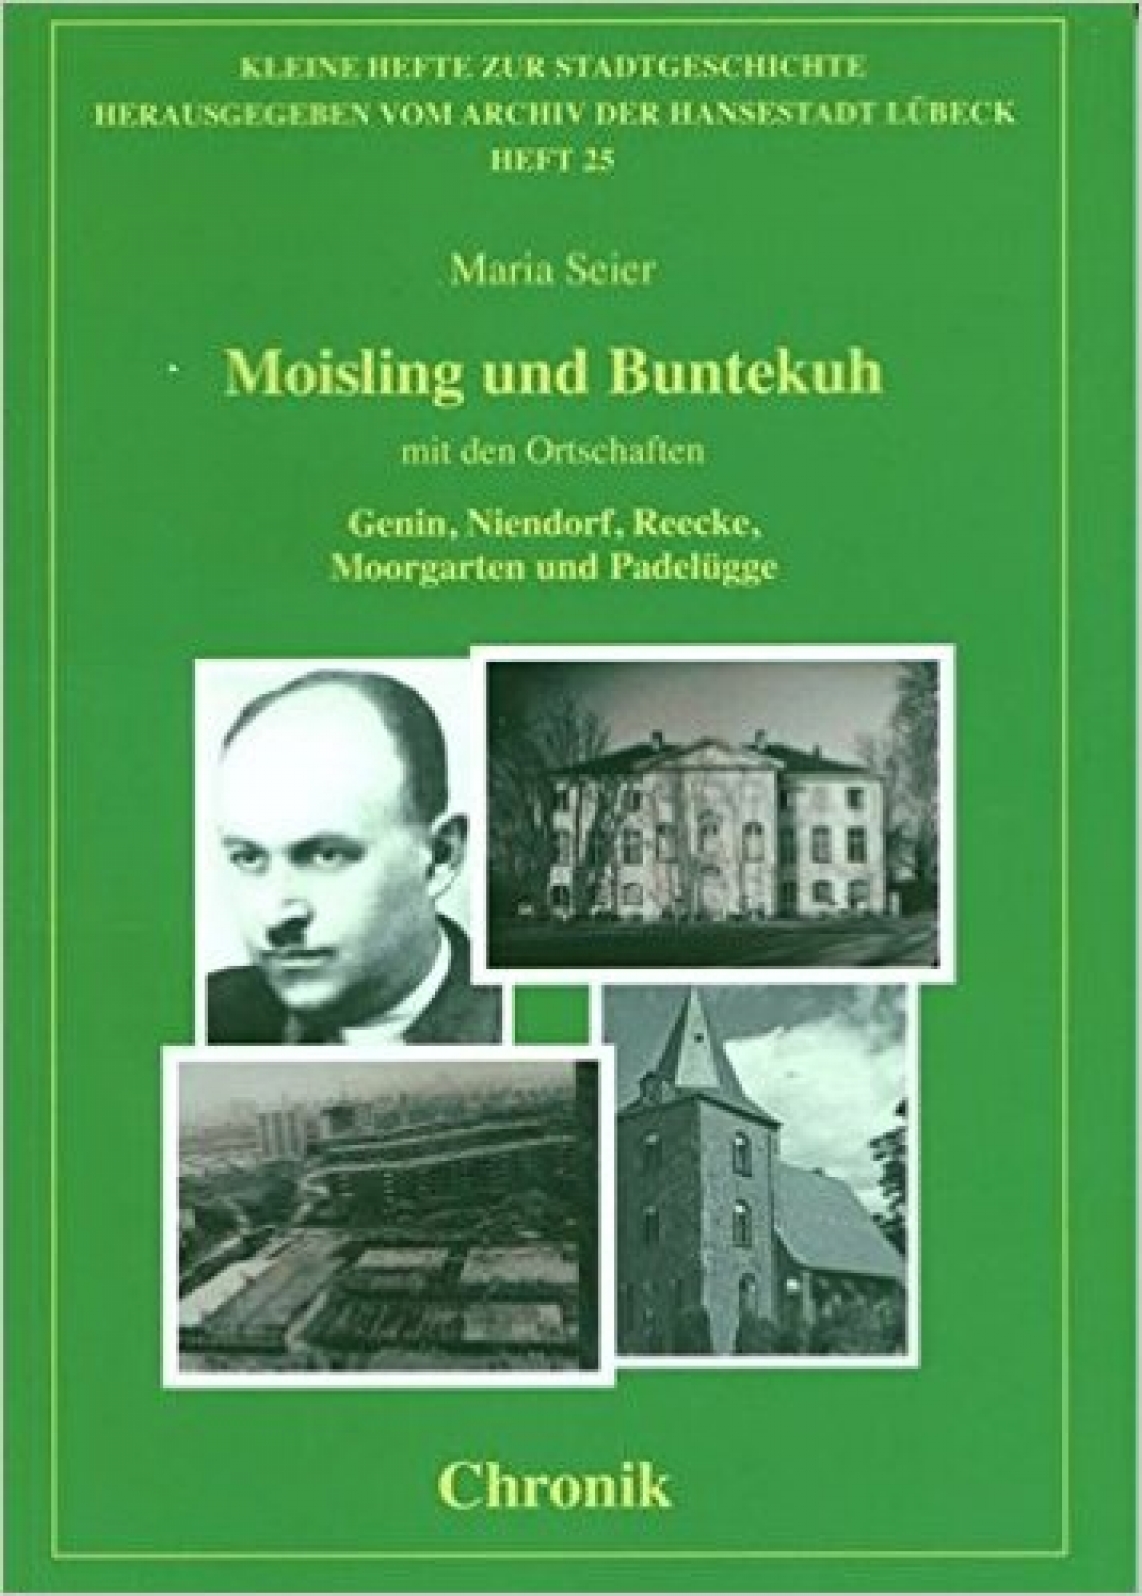 Chronik Moisling und Buntekuh (Schmidt-Römhild Verlag)